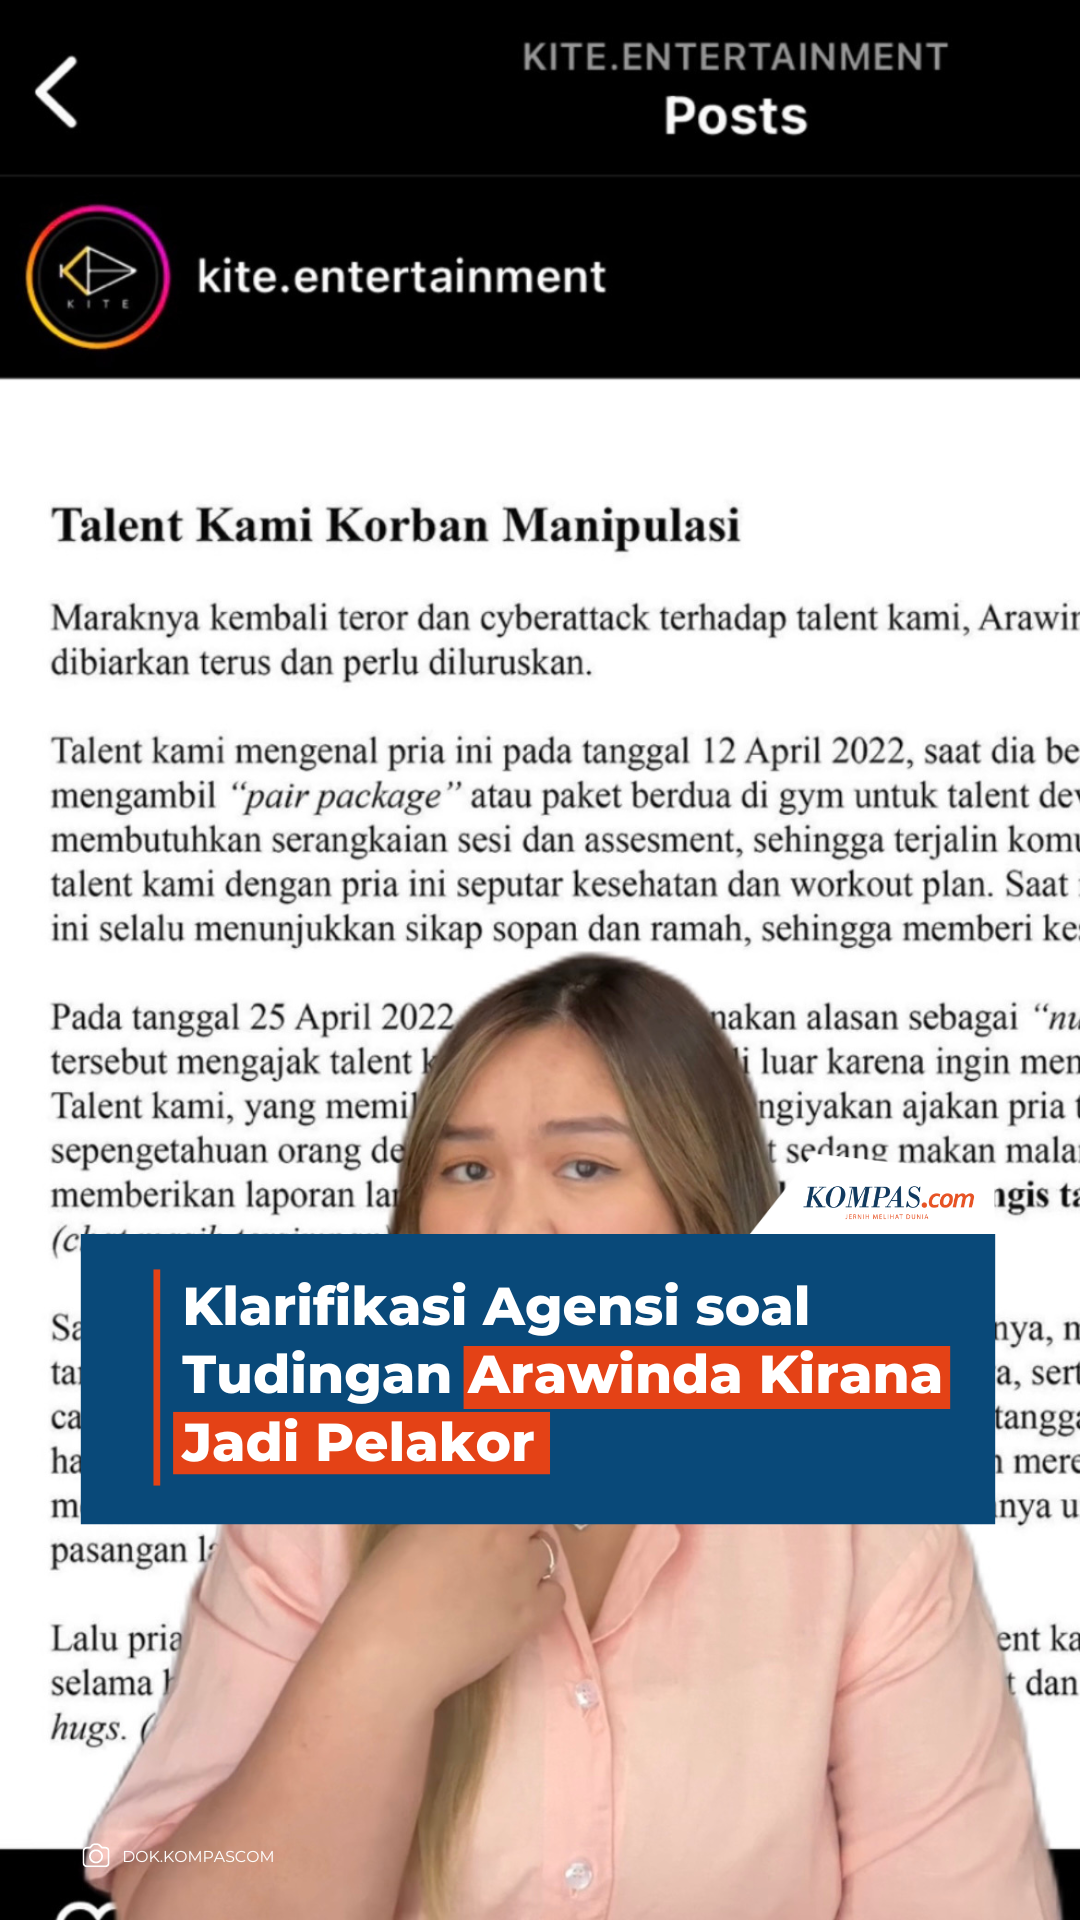 Klarifikasi Agensi soal Tudingan Arawinda Kirana Jadi Pelakor